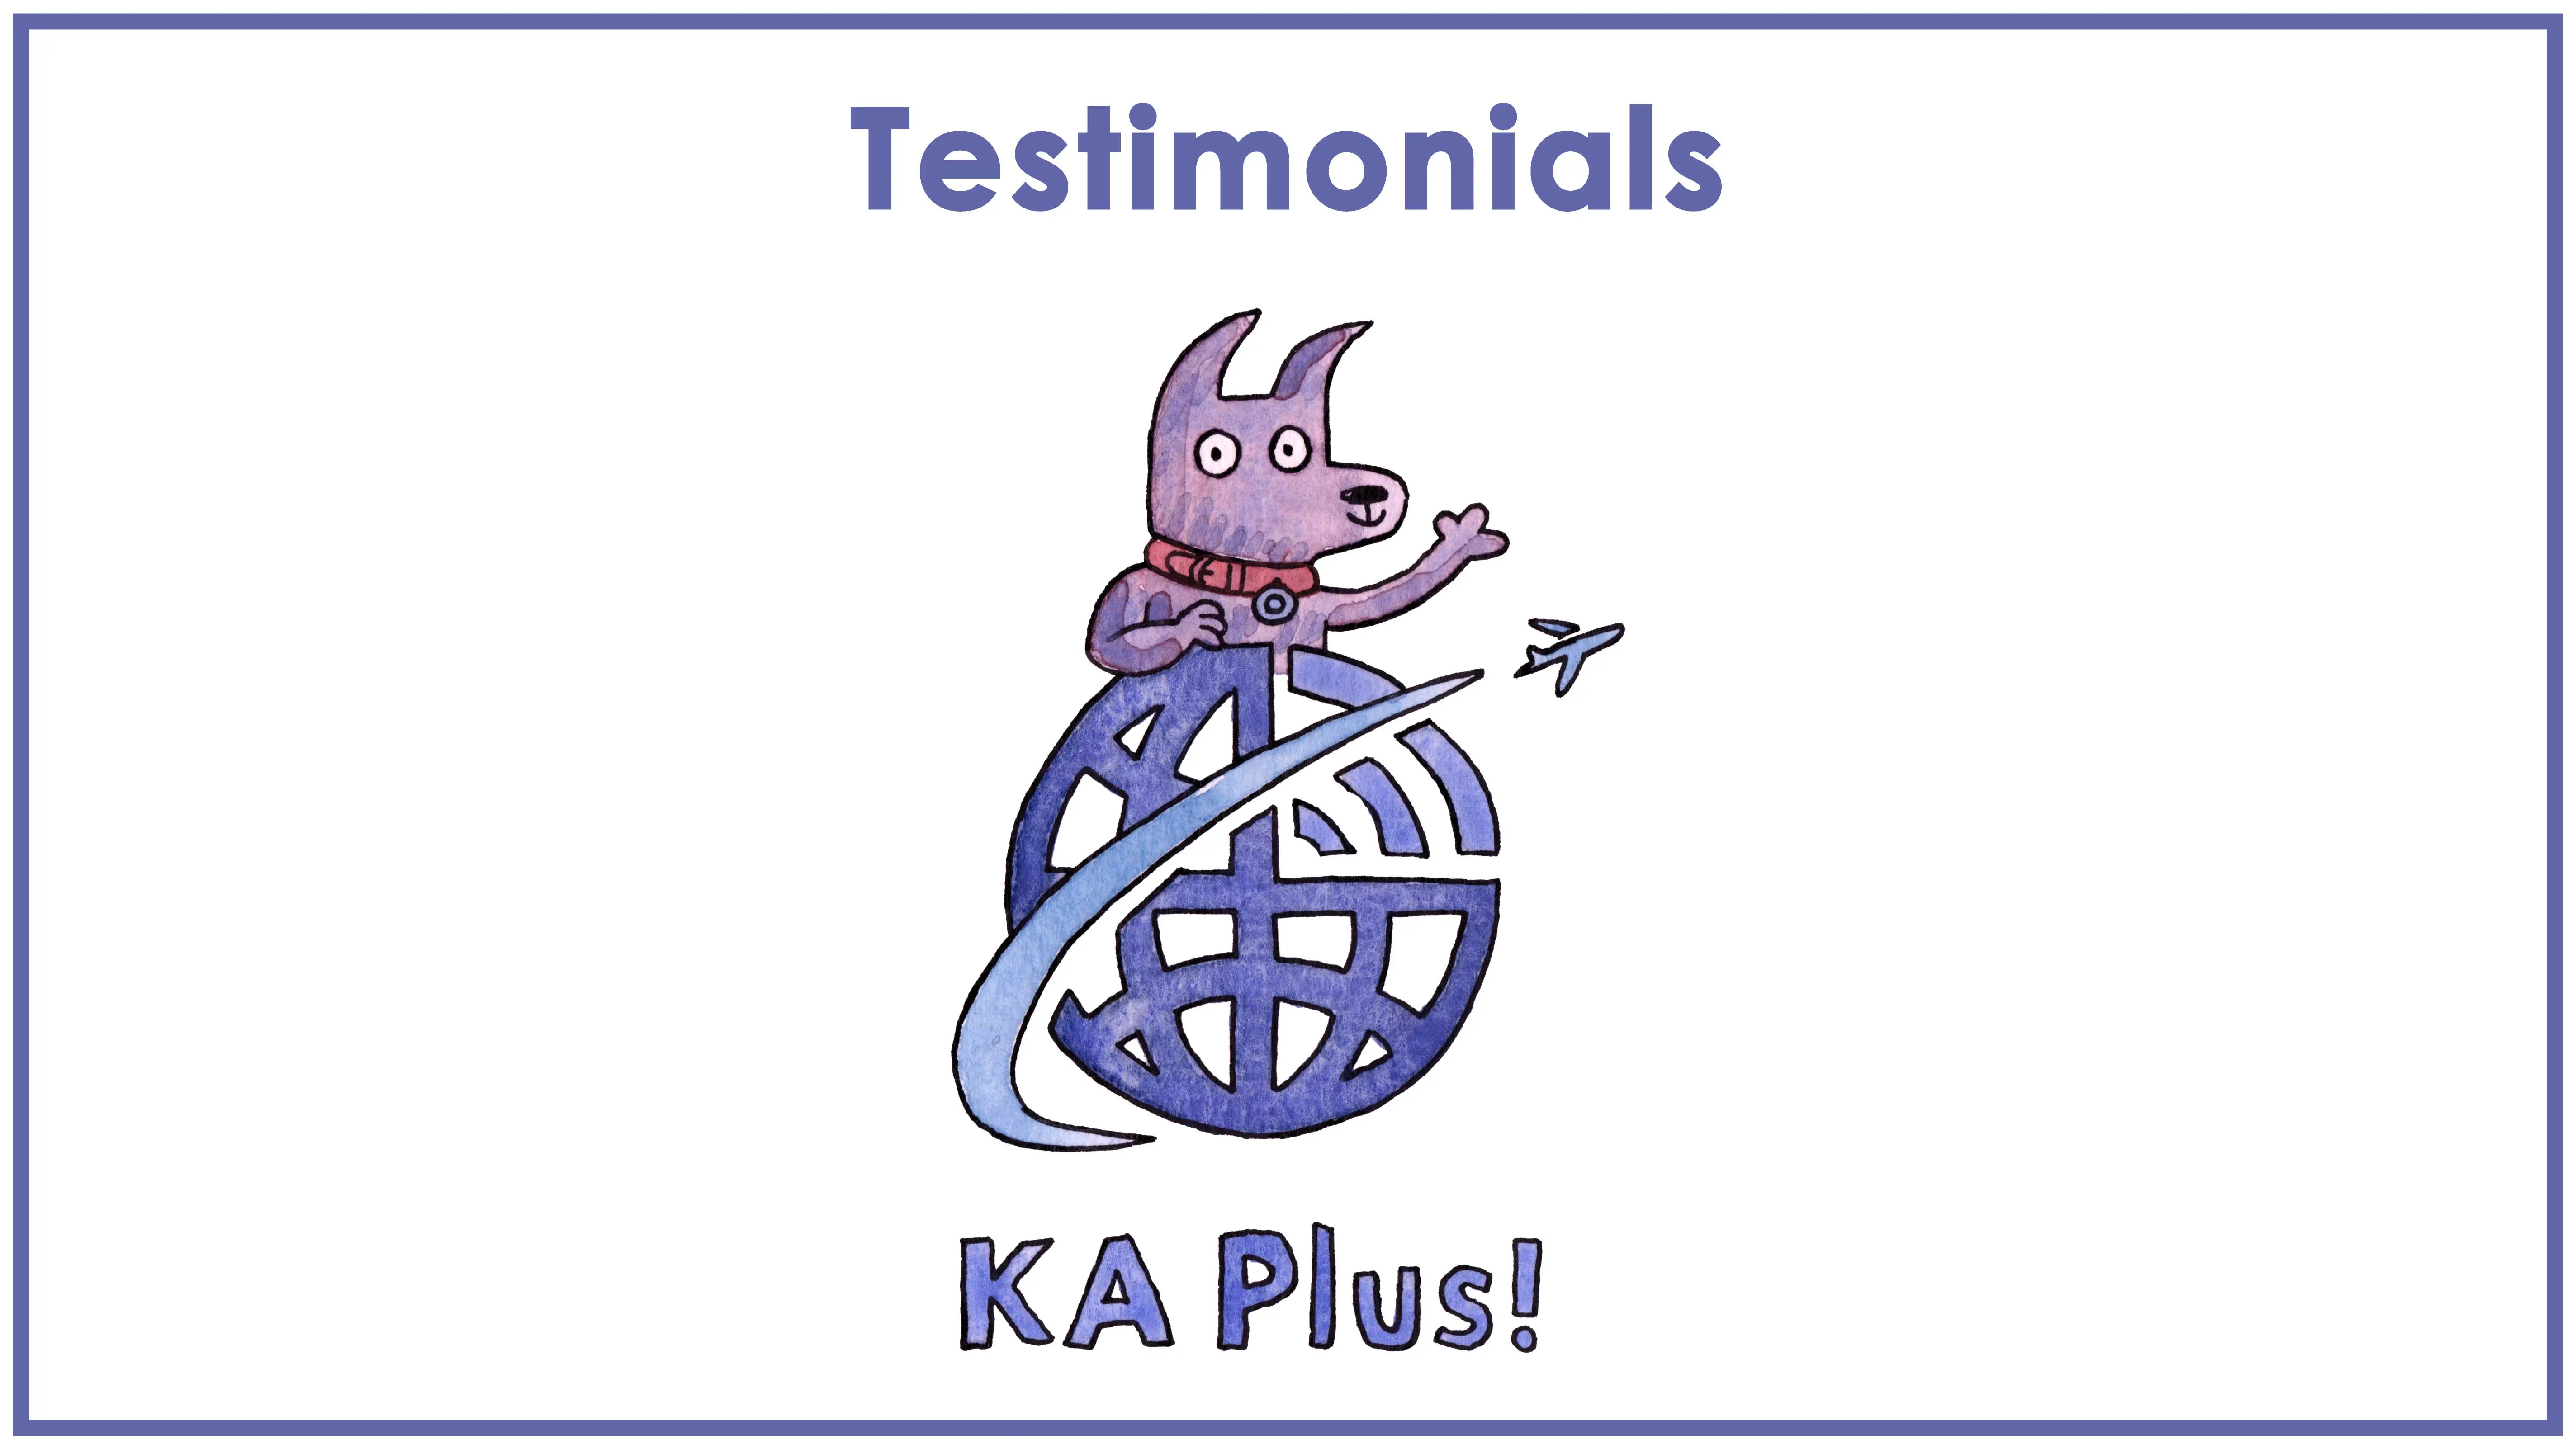 KA Plus! Testimonials